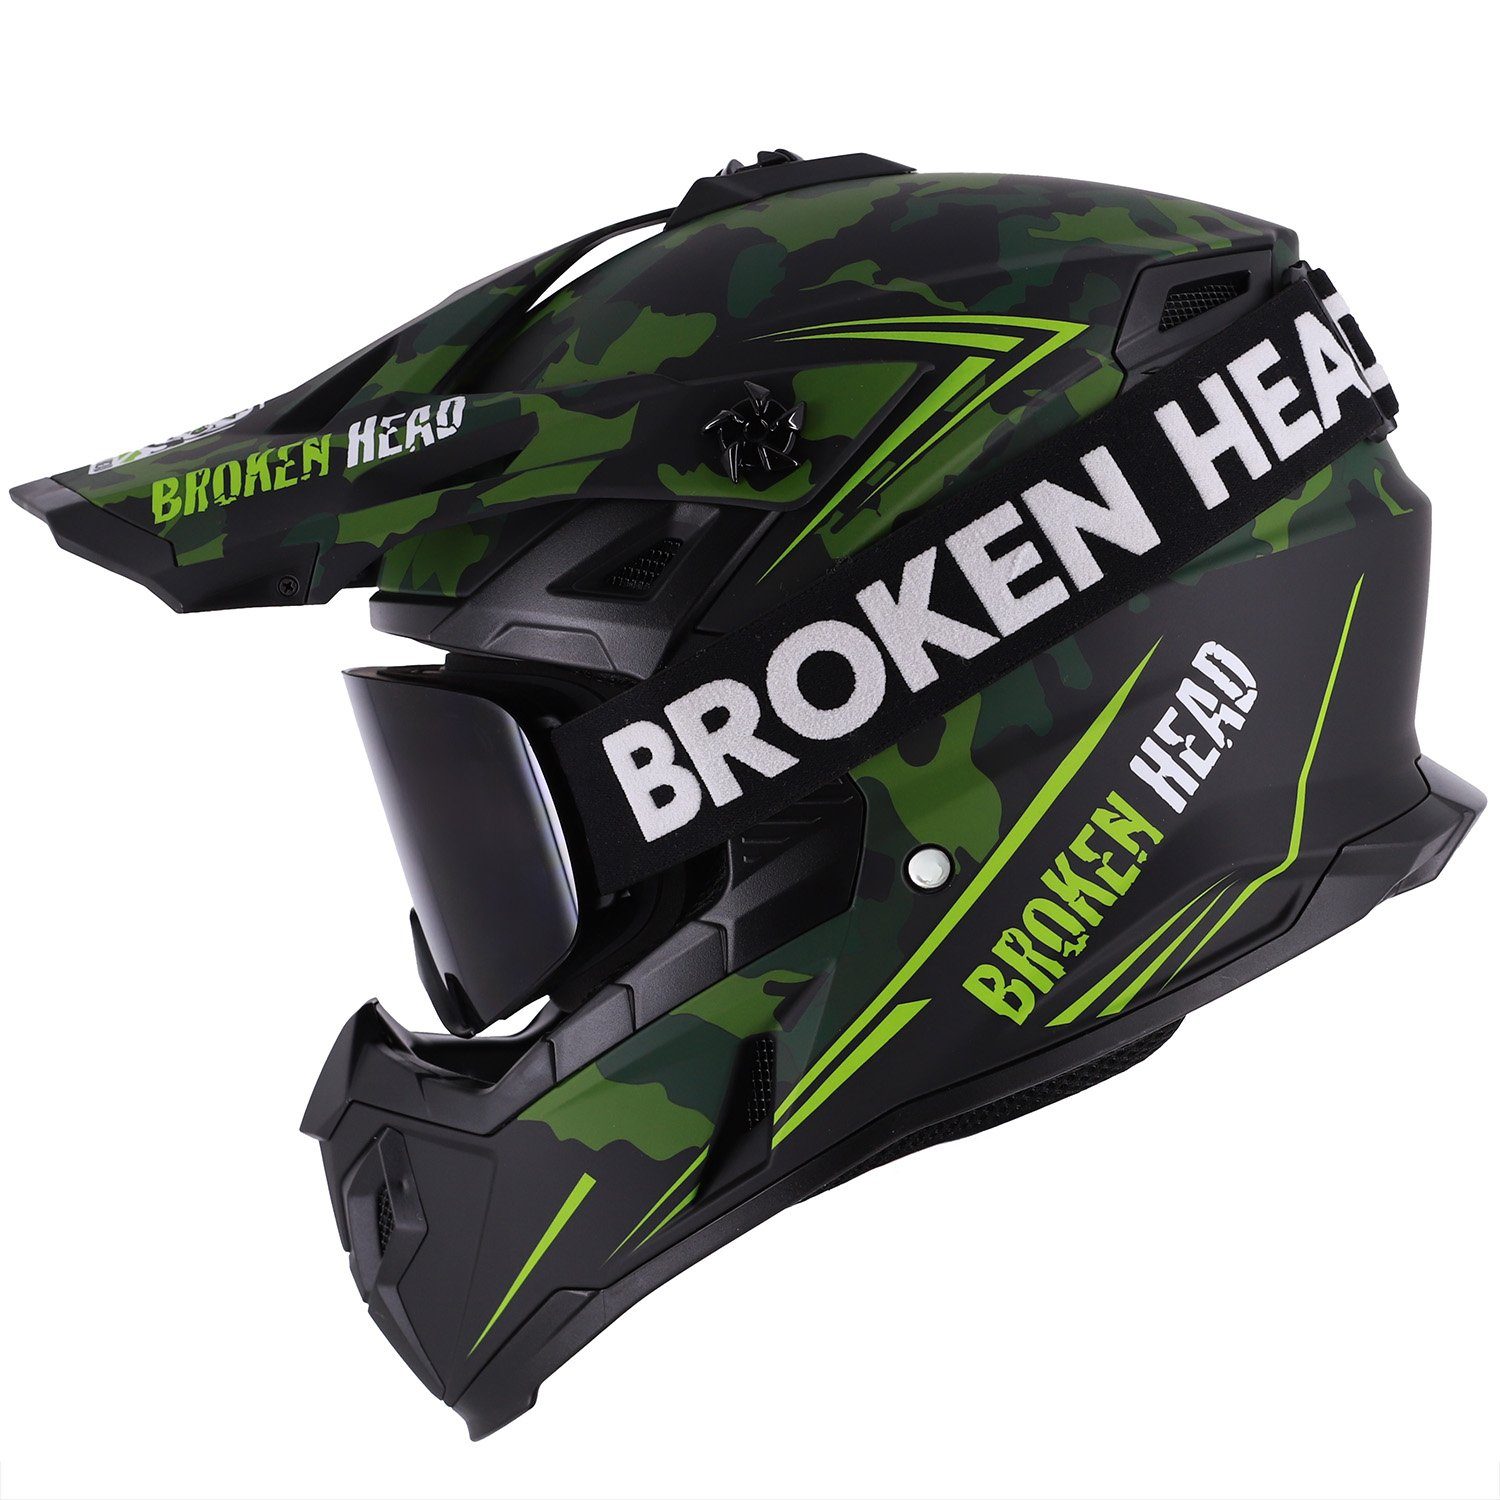 Broken Head Motocrosshelm Squadron Rebelution Grün (Mit MX-Struggler Schwarz), Mit zwei Verschlüssen